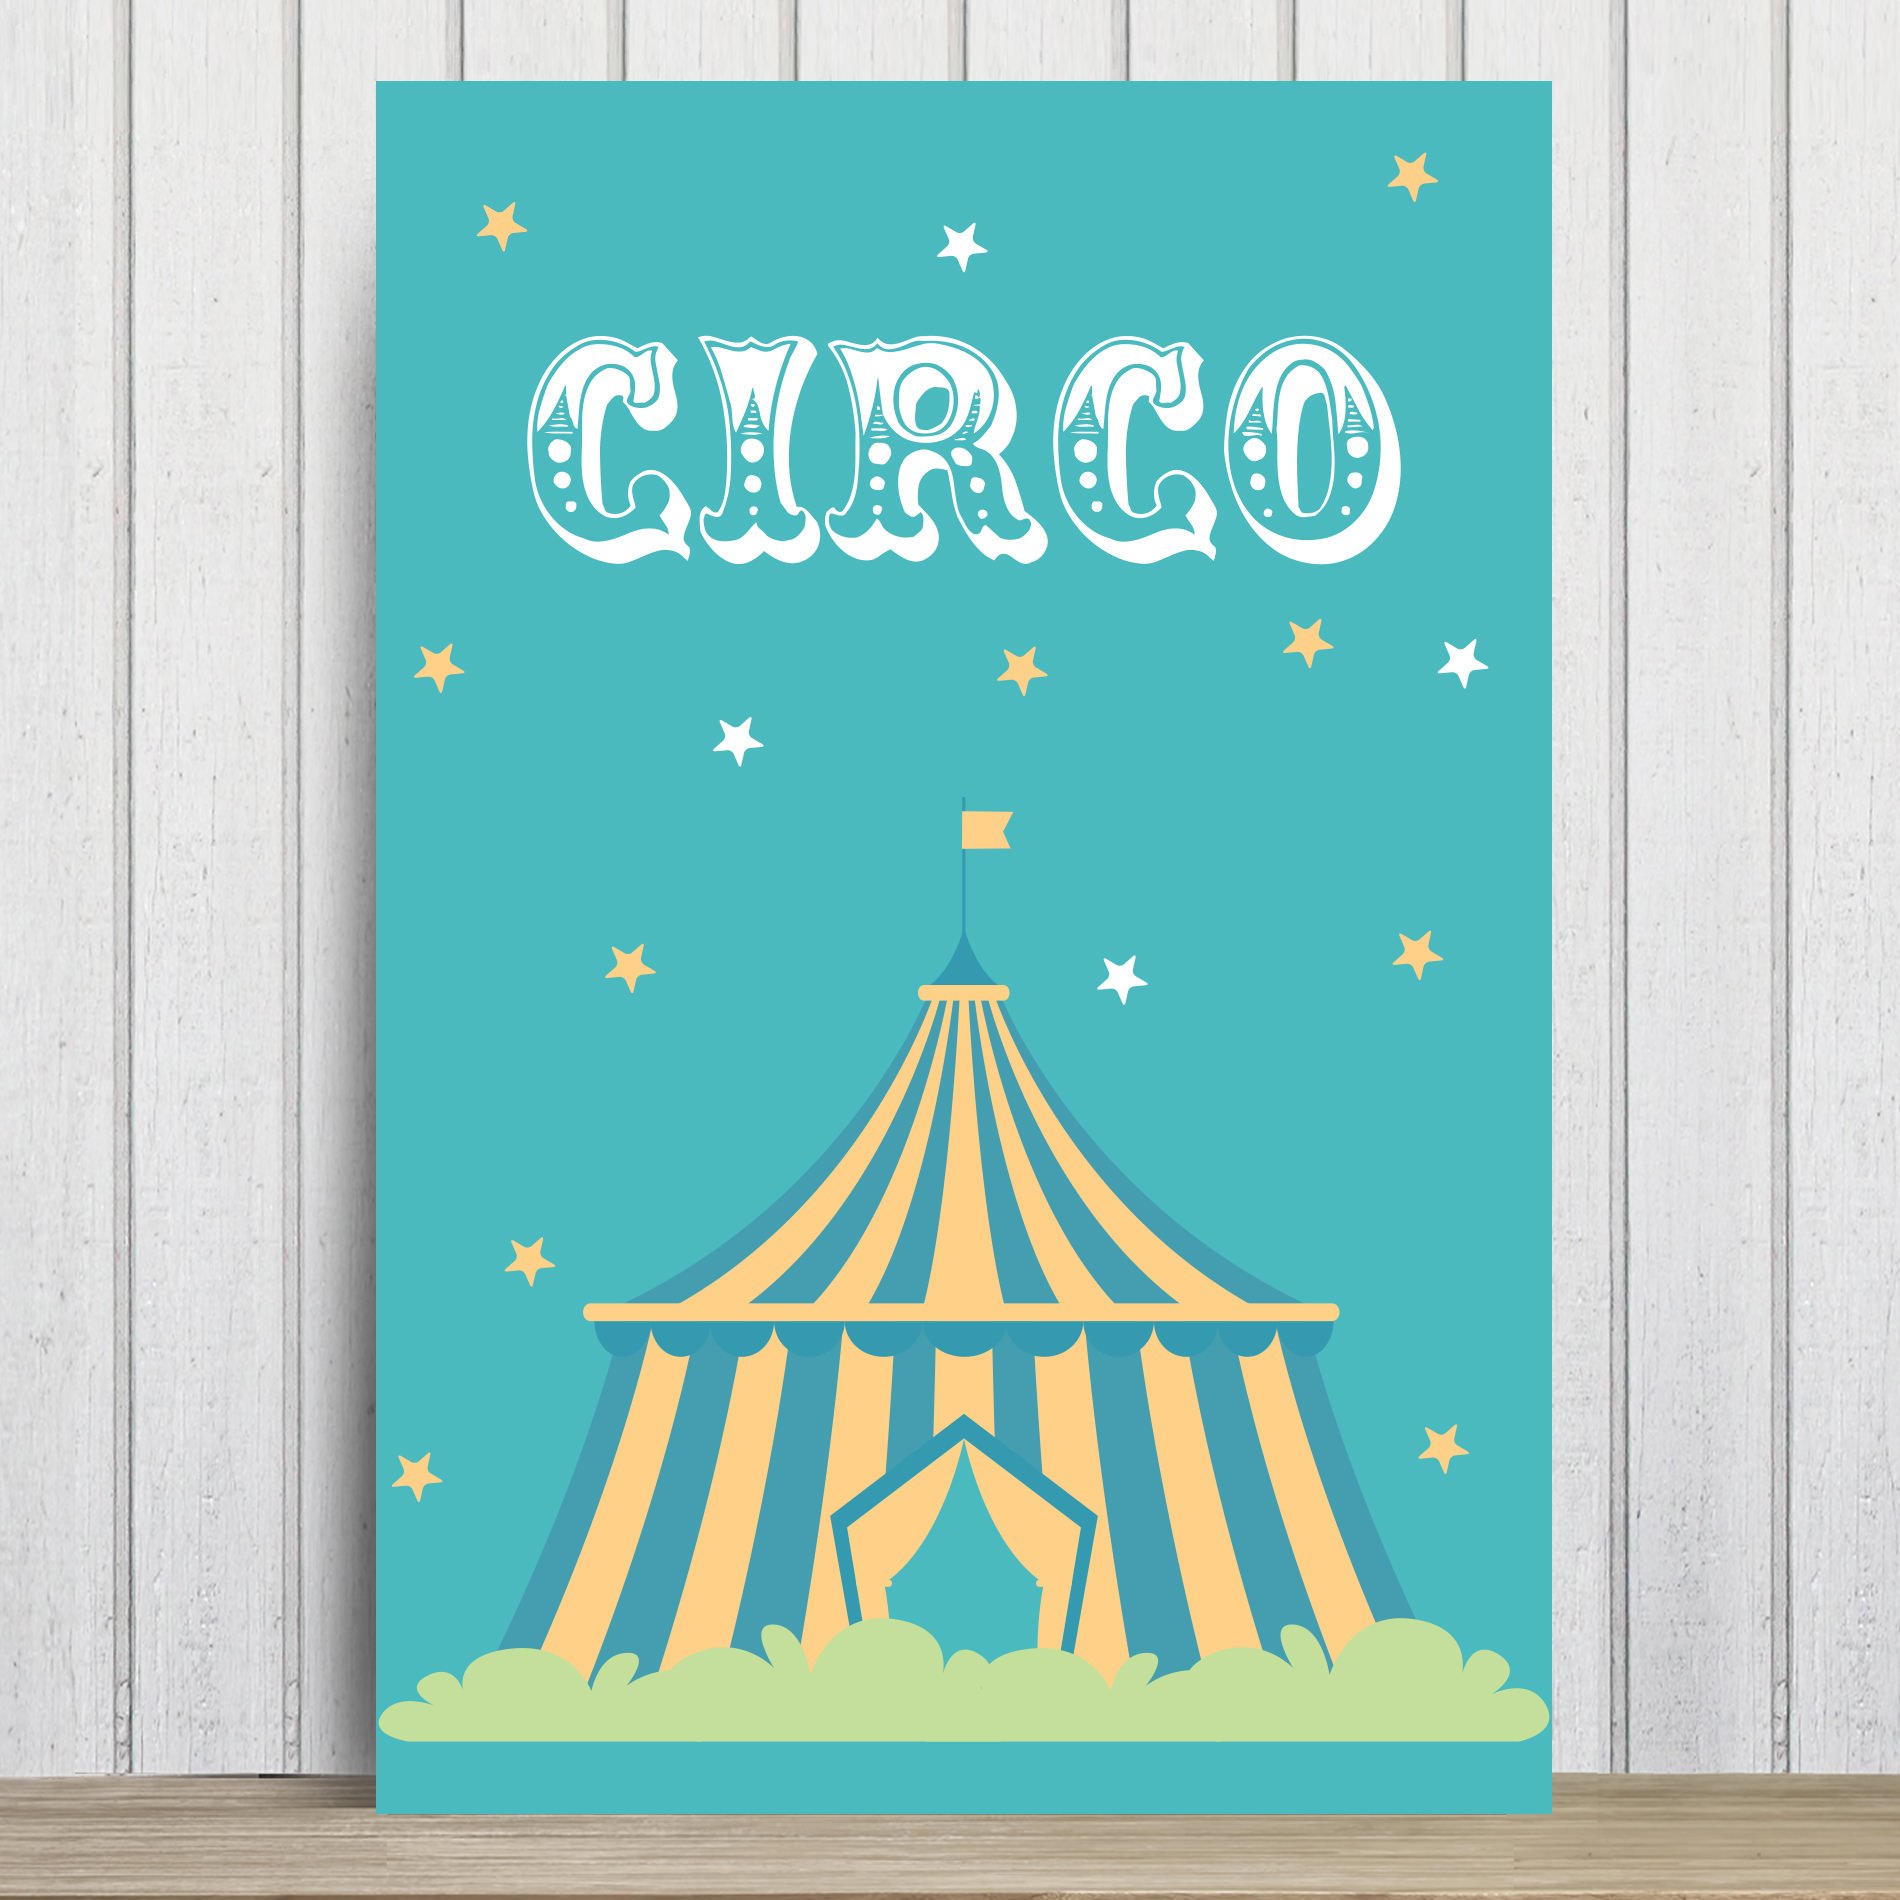 Placa Decorativa Infantil Circo Tenda MDF